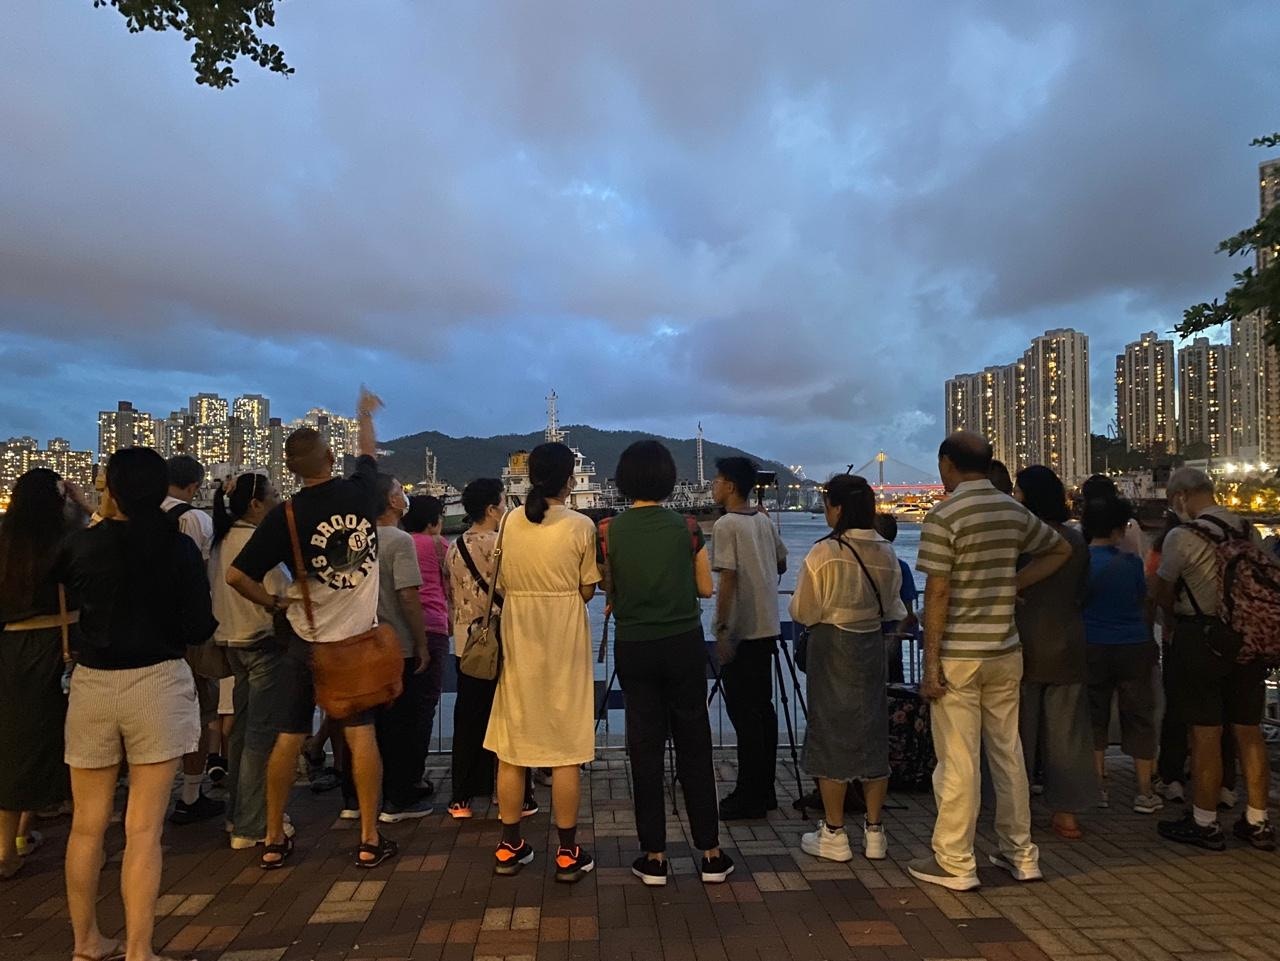 荃湾各界庆祝回归委员会于7月1日晚上8时半在荃湾海滨长廊近海安路（近荃湾西站）举办「无人机汇演贺回归」活动，在晚上7时已有大批市民在等候观看。（余月明摄）